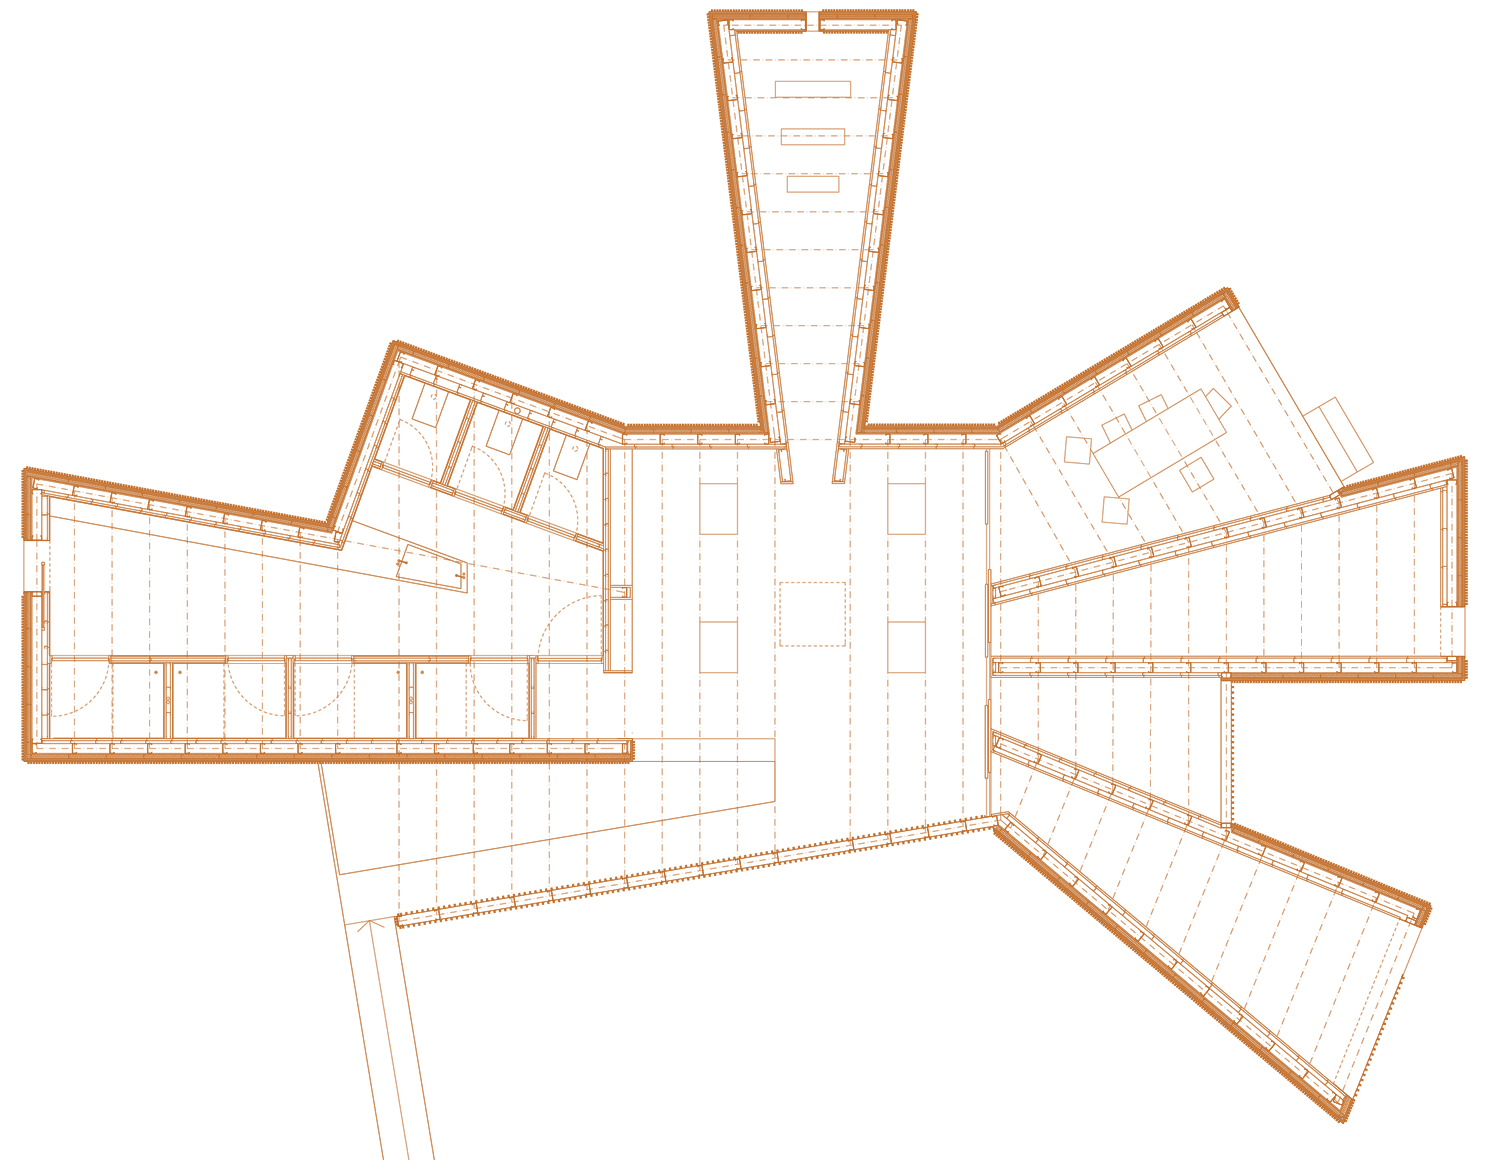 Floorplan of the Shelter for Pilgrims